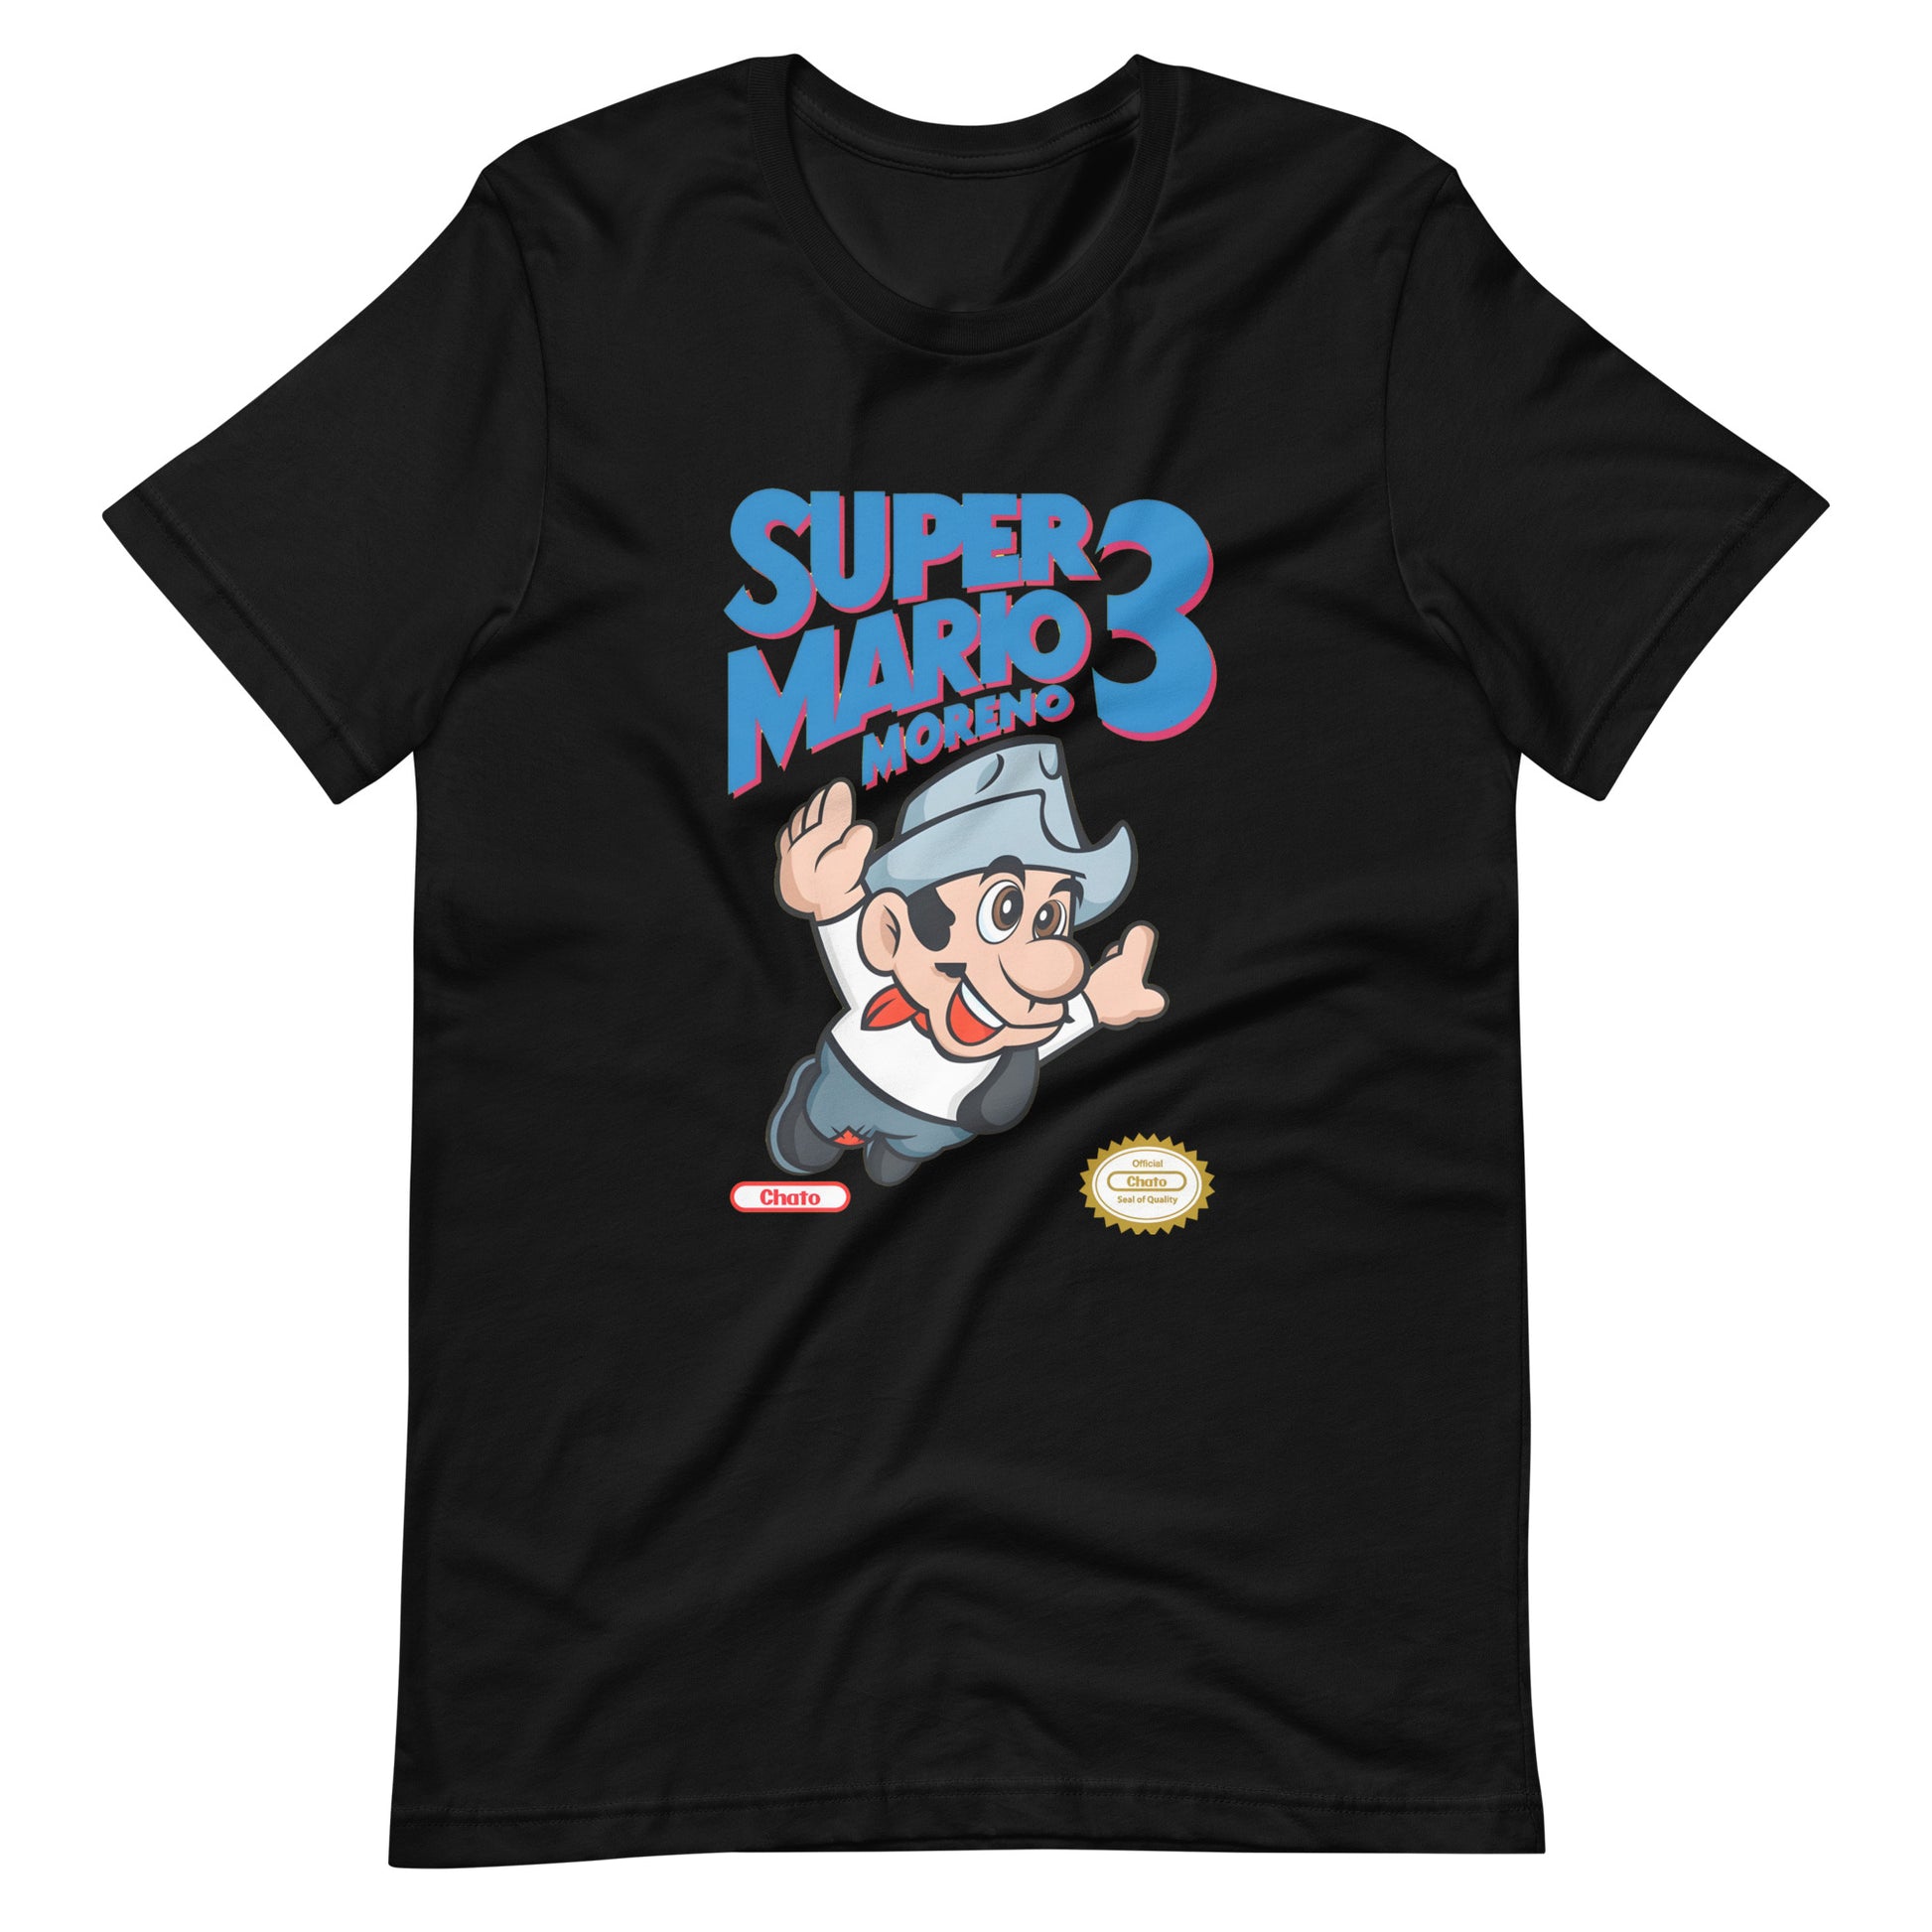 Camiseta de Super Mario Moreno, Es un producto de ropa que es ideal para los fanáticos de Cantinflas y Mario Bross que deseen mostrar su amor.